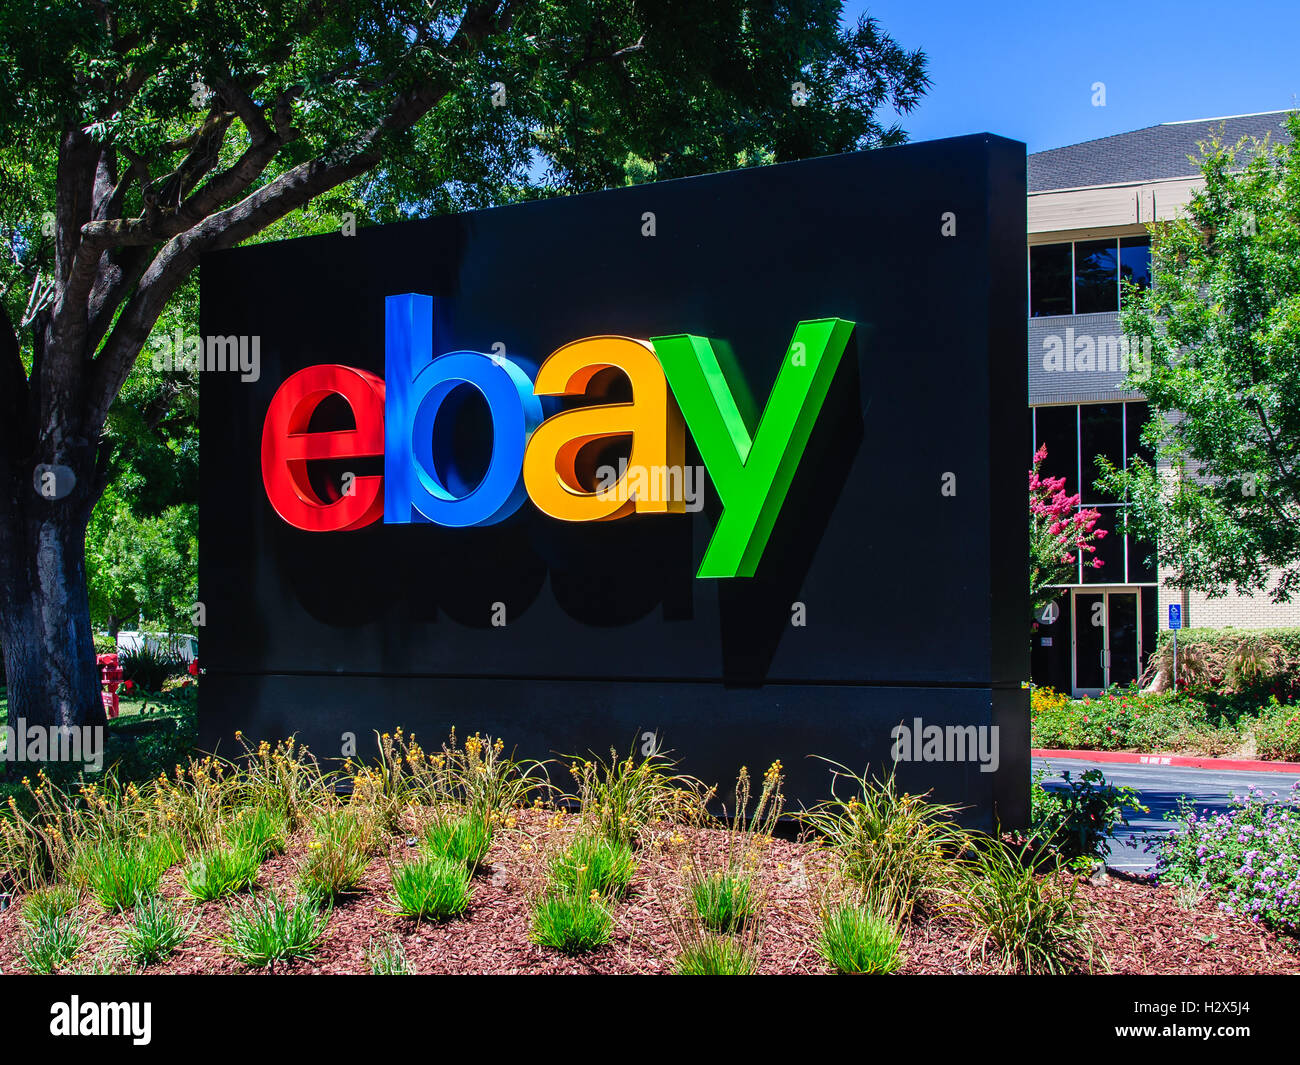 San Jose, CA - Juil 17, 2016 : eBay Inc. AC. eBay Inc. est une entreprise de commerce électronique. Banque D'Images